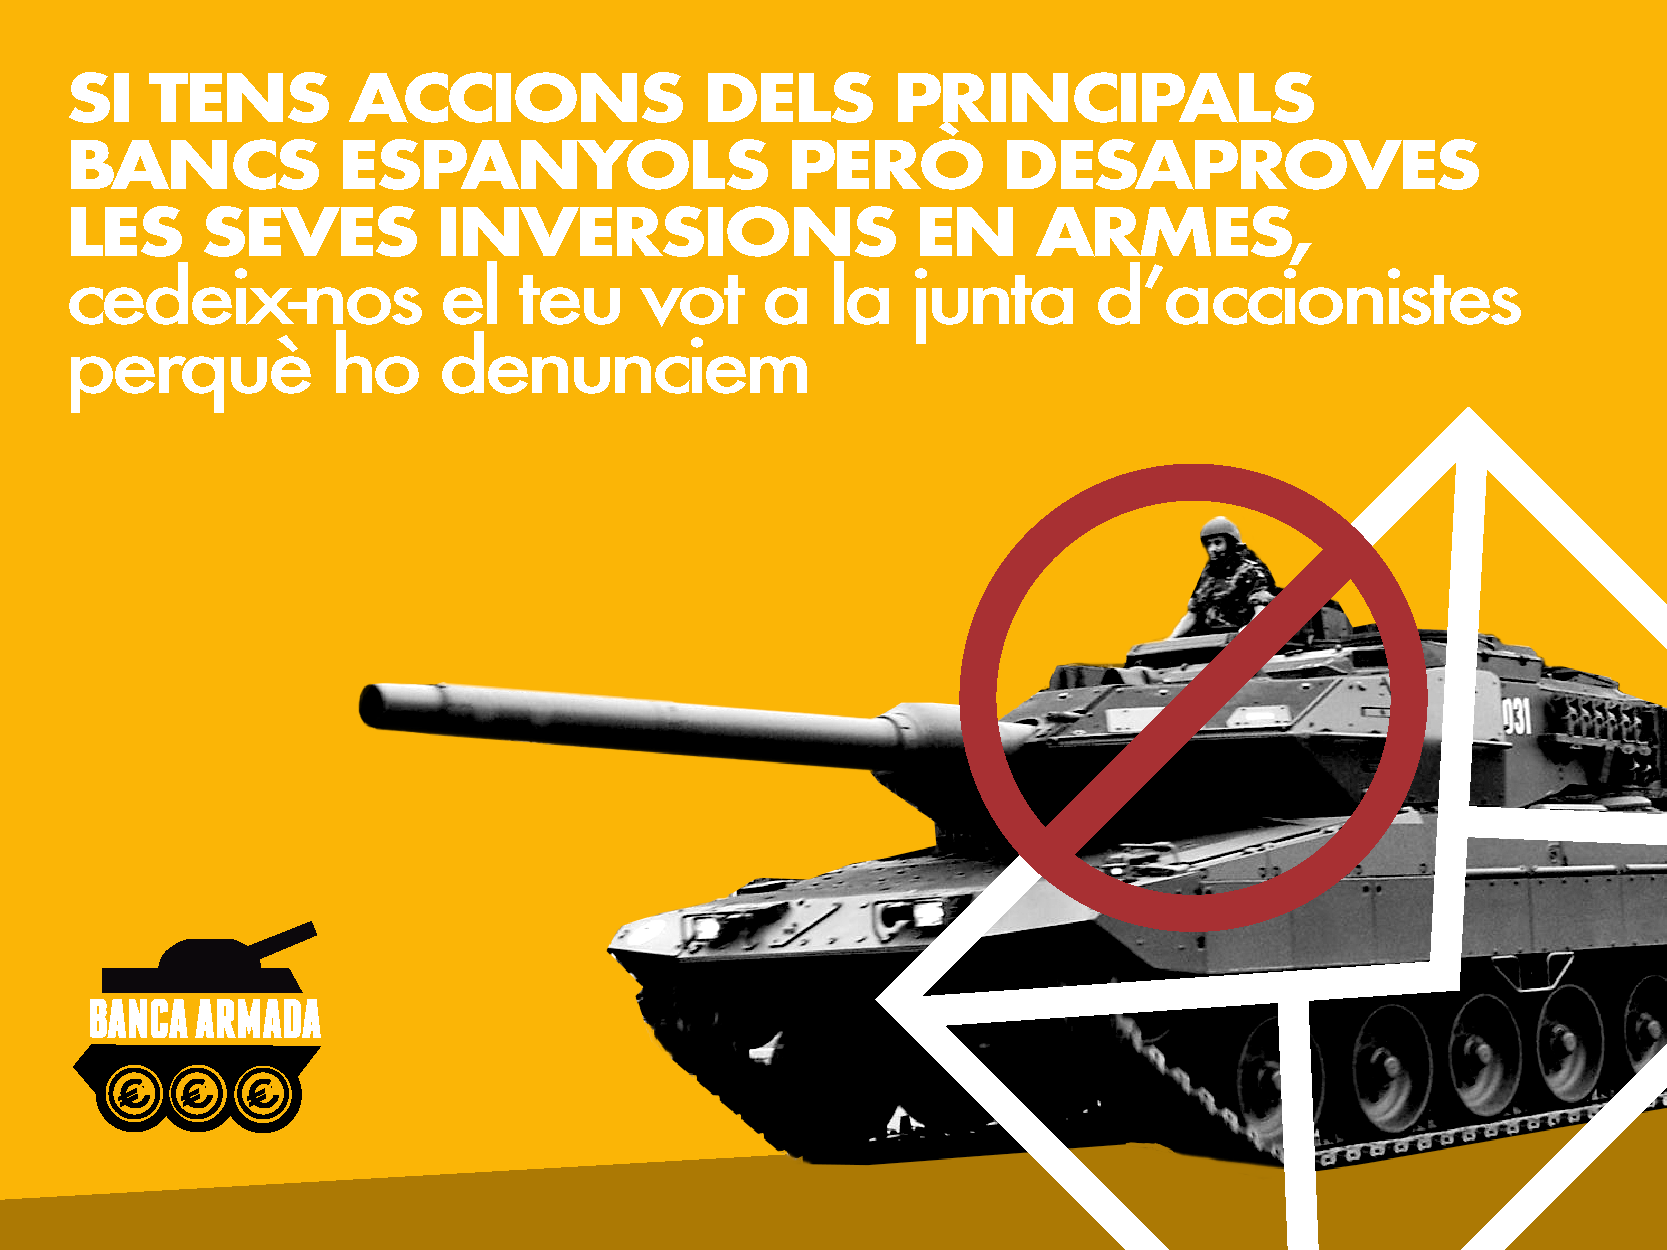 Inici de la campanya Banca Armada 2018: Petició d’accions per denunciar les inversions en armes a la junta d’accionistes